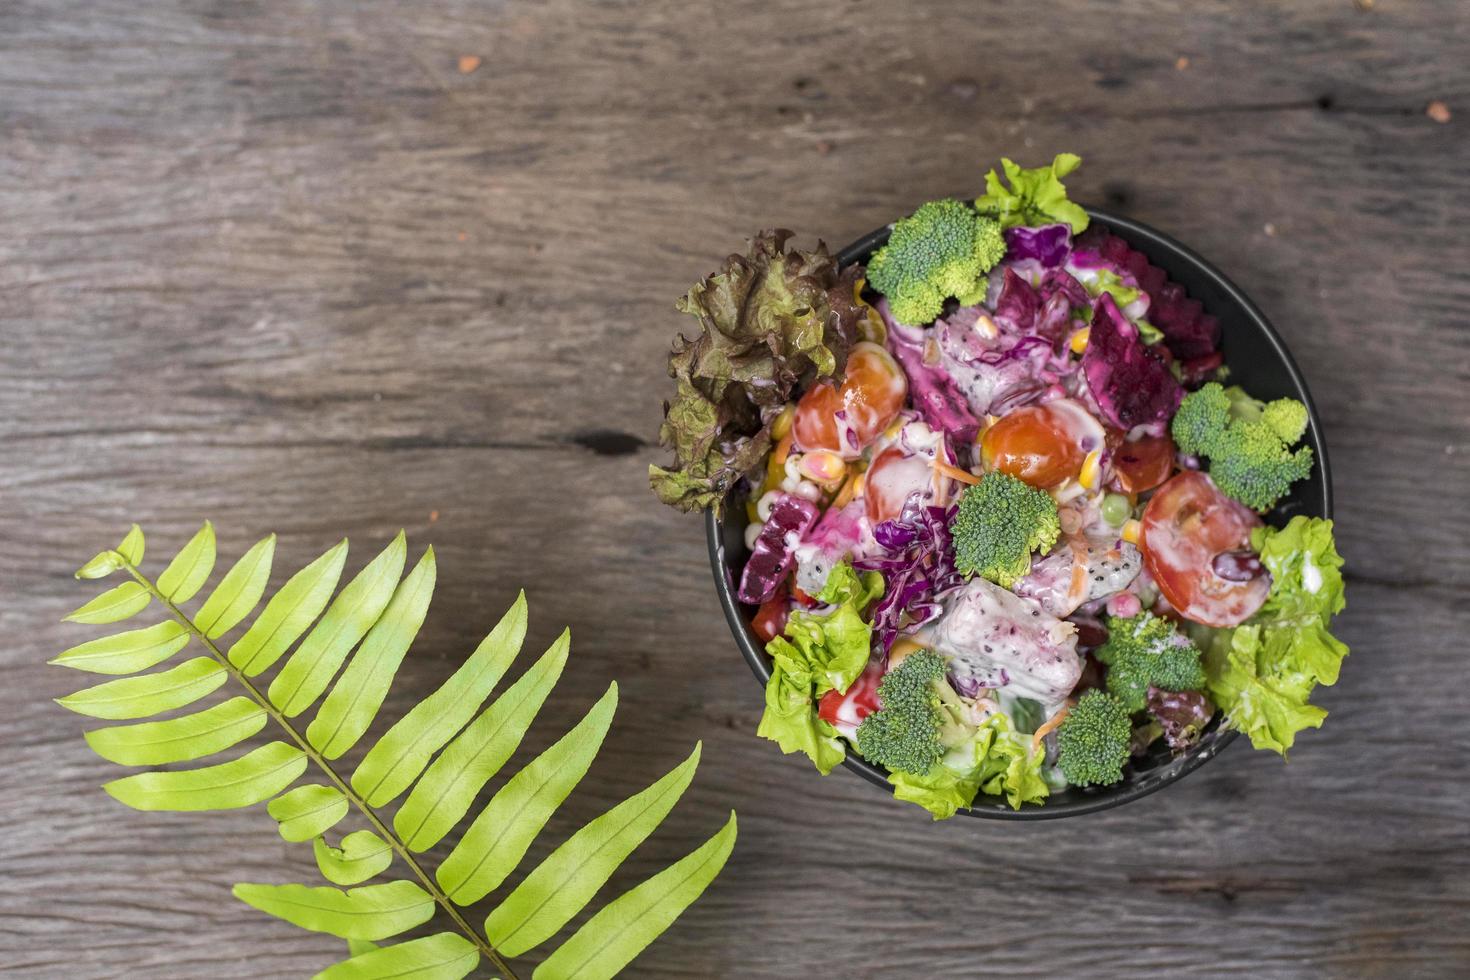 Salat auf Holztisch, gesundes Lebensmittelkonzept foto